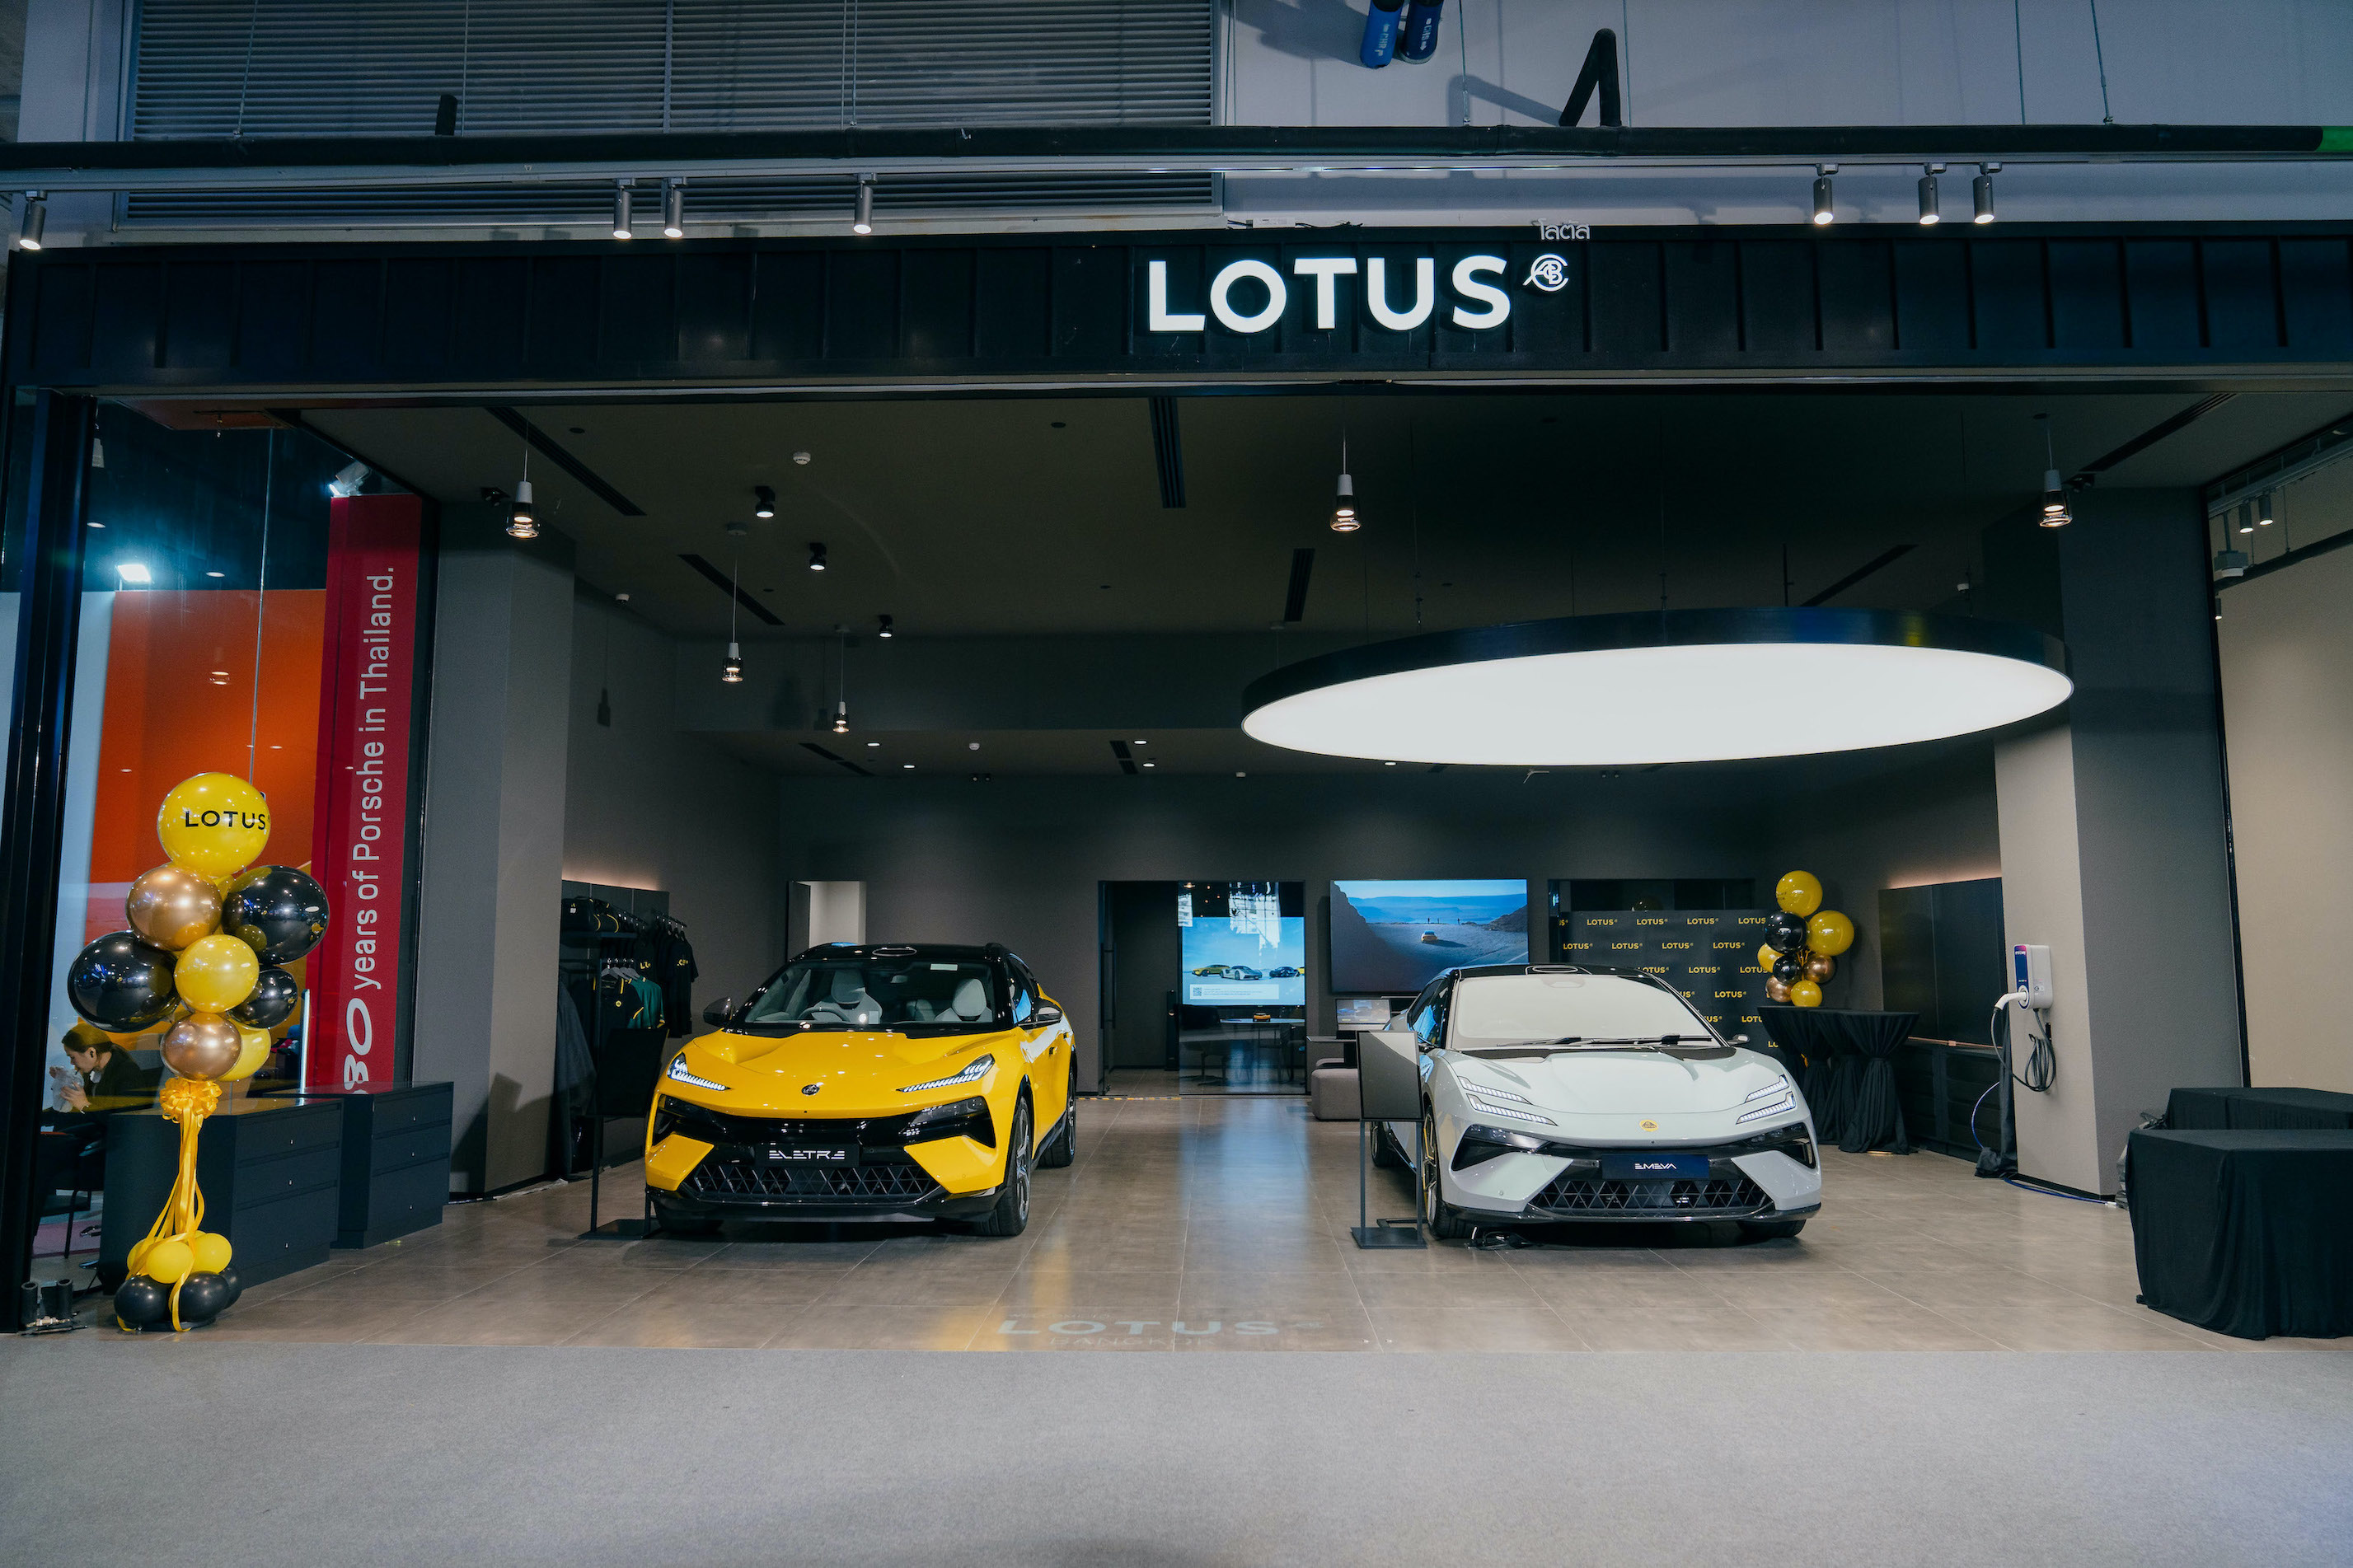 Lotus Cars Thailand เปิดตัวแฟลกชิปสโตร์แห่งใหม่ในประเทศไทย ณ ศูนย์การค้าเอ็มสเฟียร์